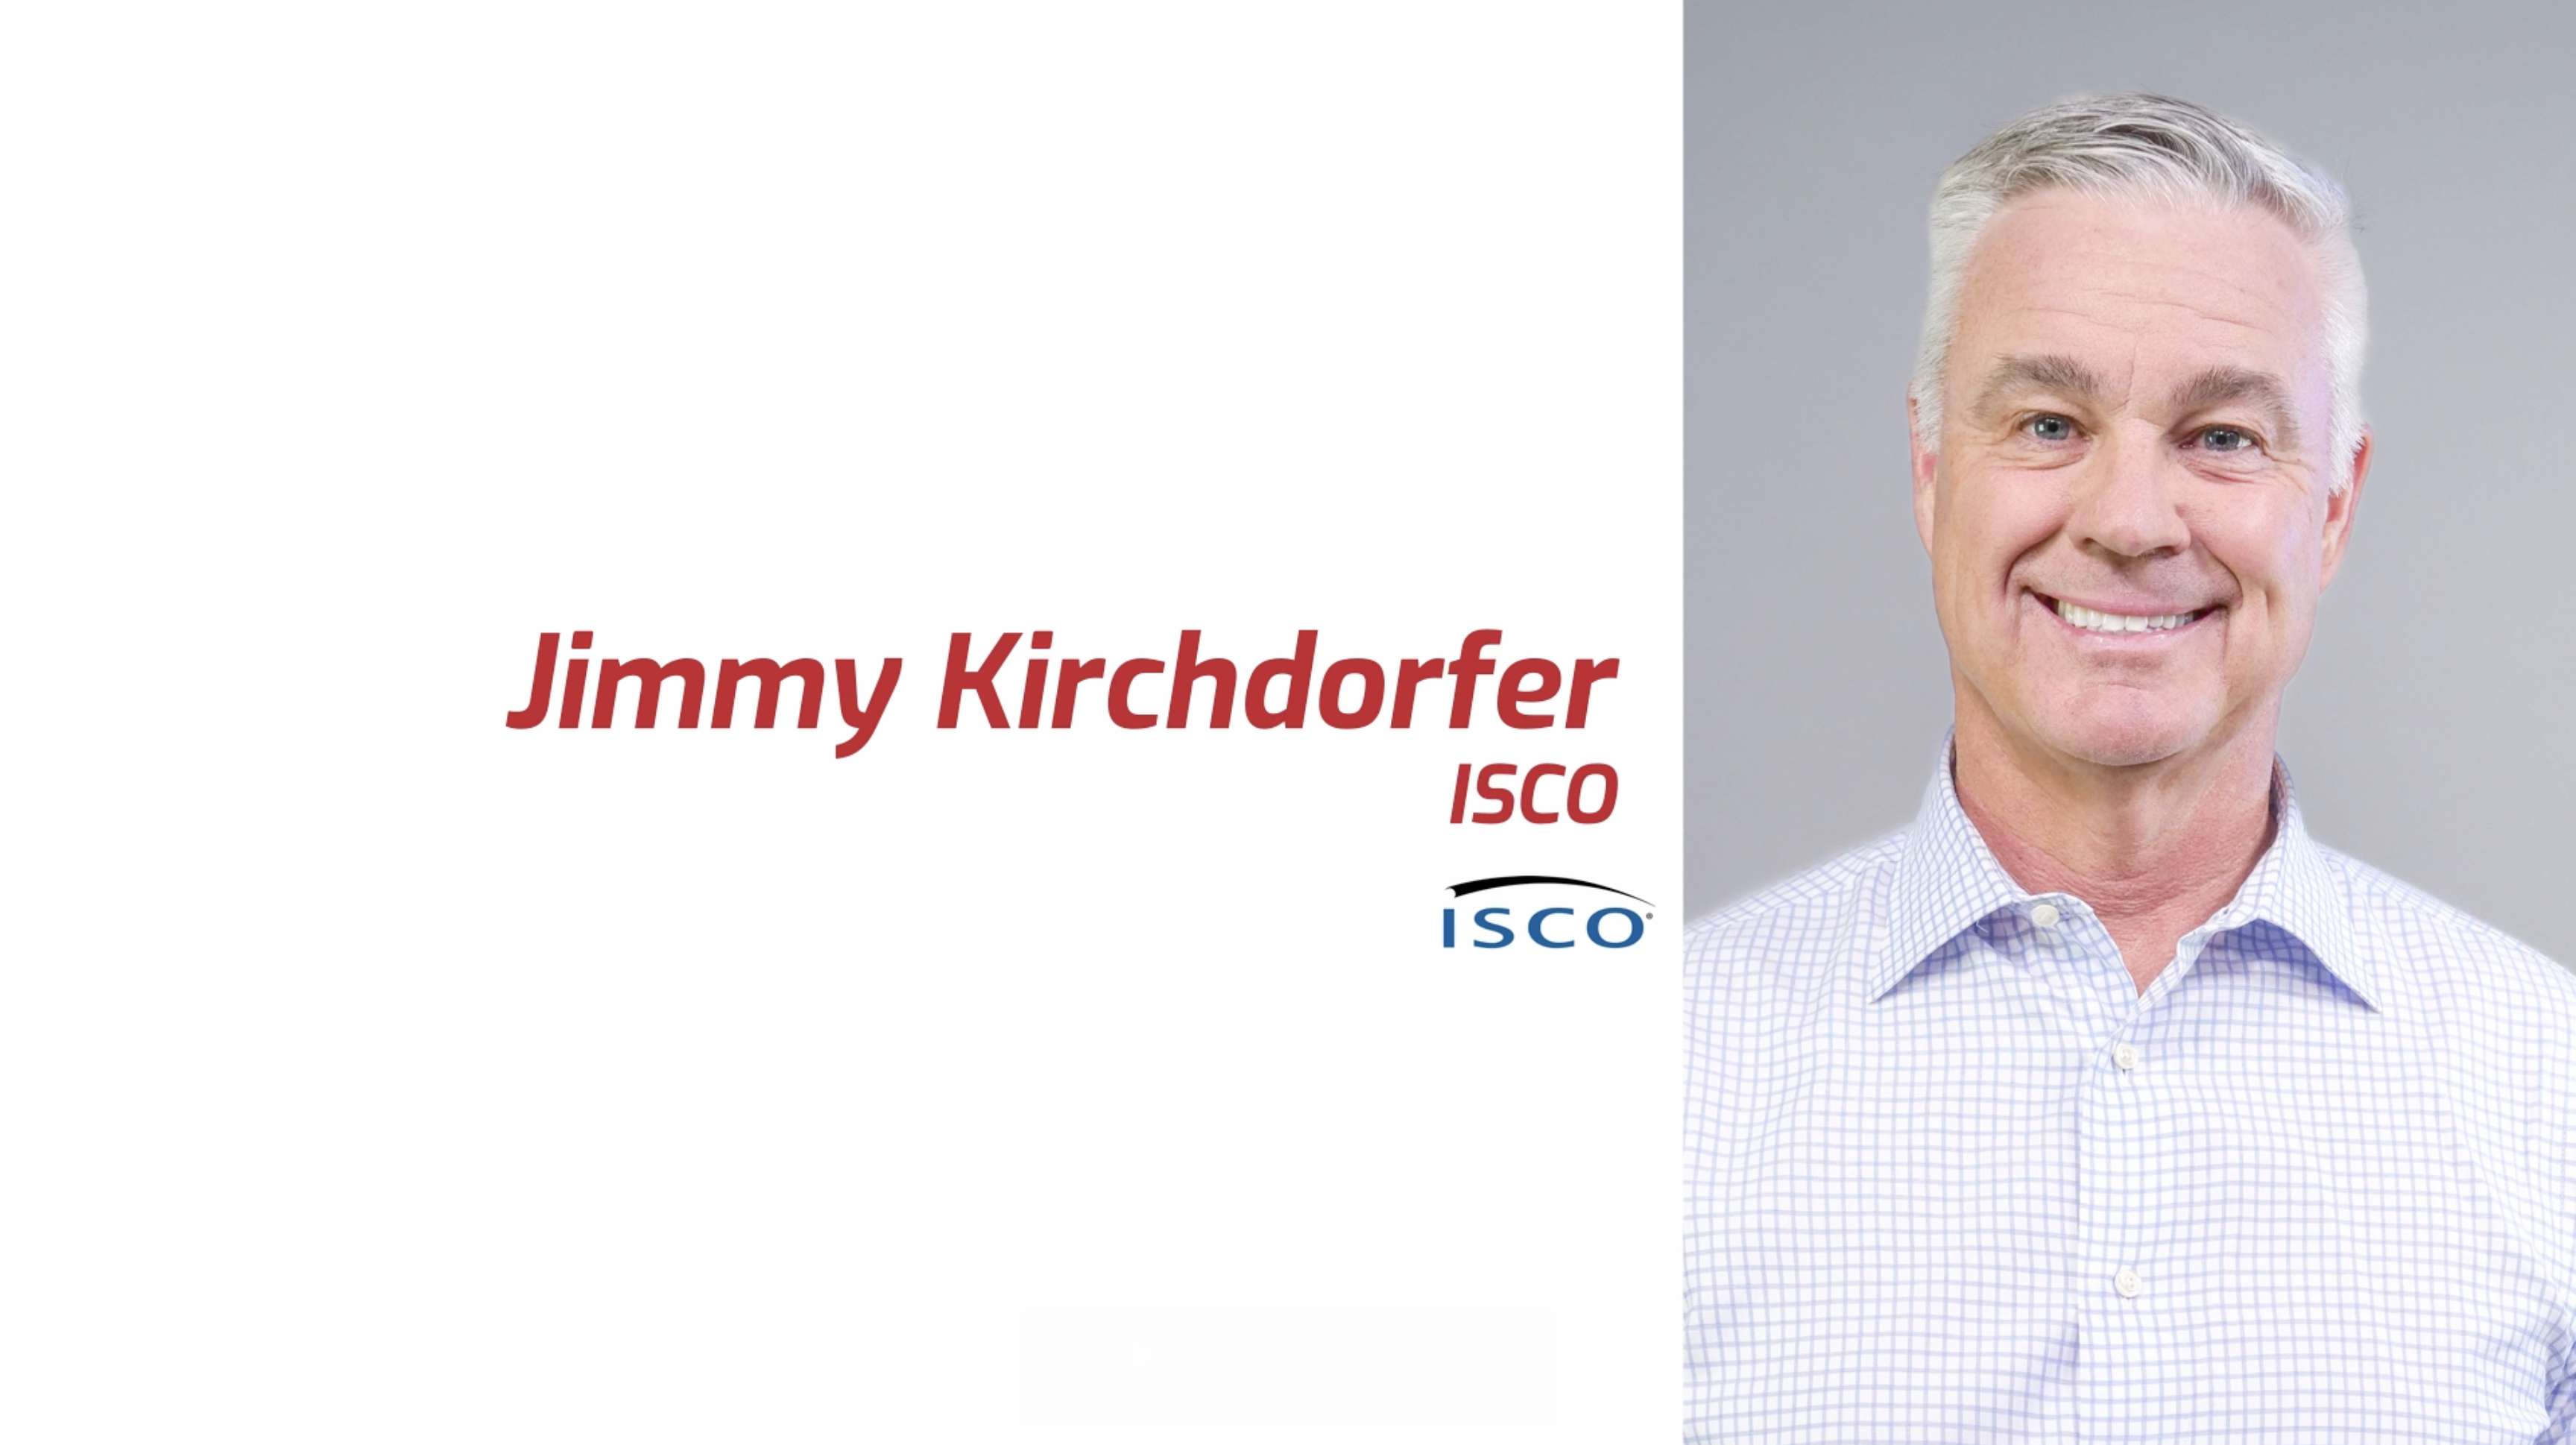 Jimmy Kirchdorfer Profile Video